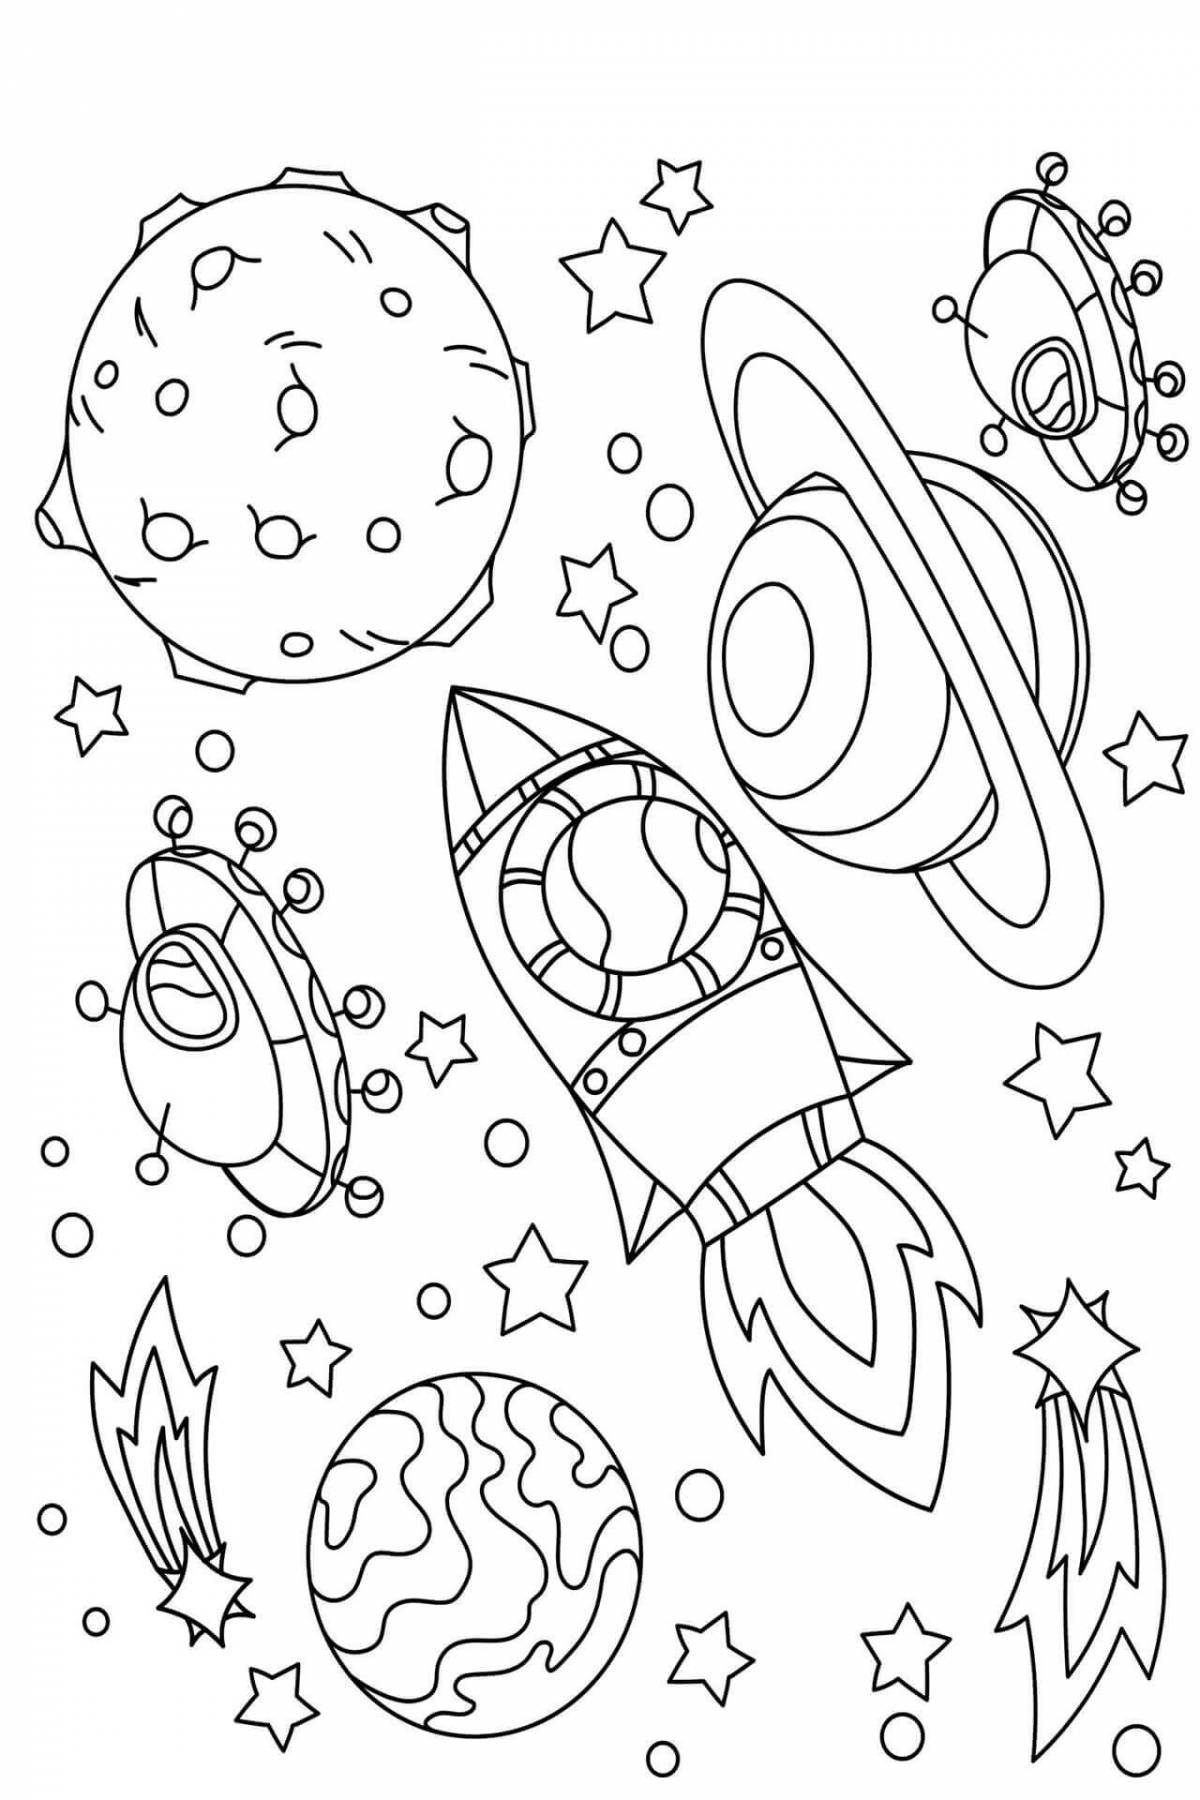 Раскраска космос для детей 3 4. Космос раскраска для детей. Раскраска космос для детей 6-7 лет. Раскраска. В космосе. Раскраски космос для детей 4-5 лет.